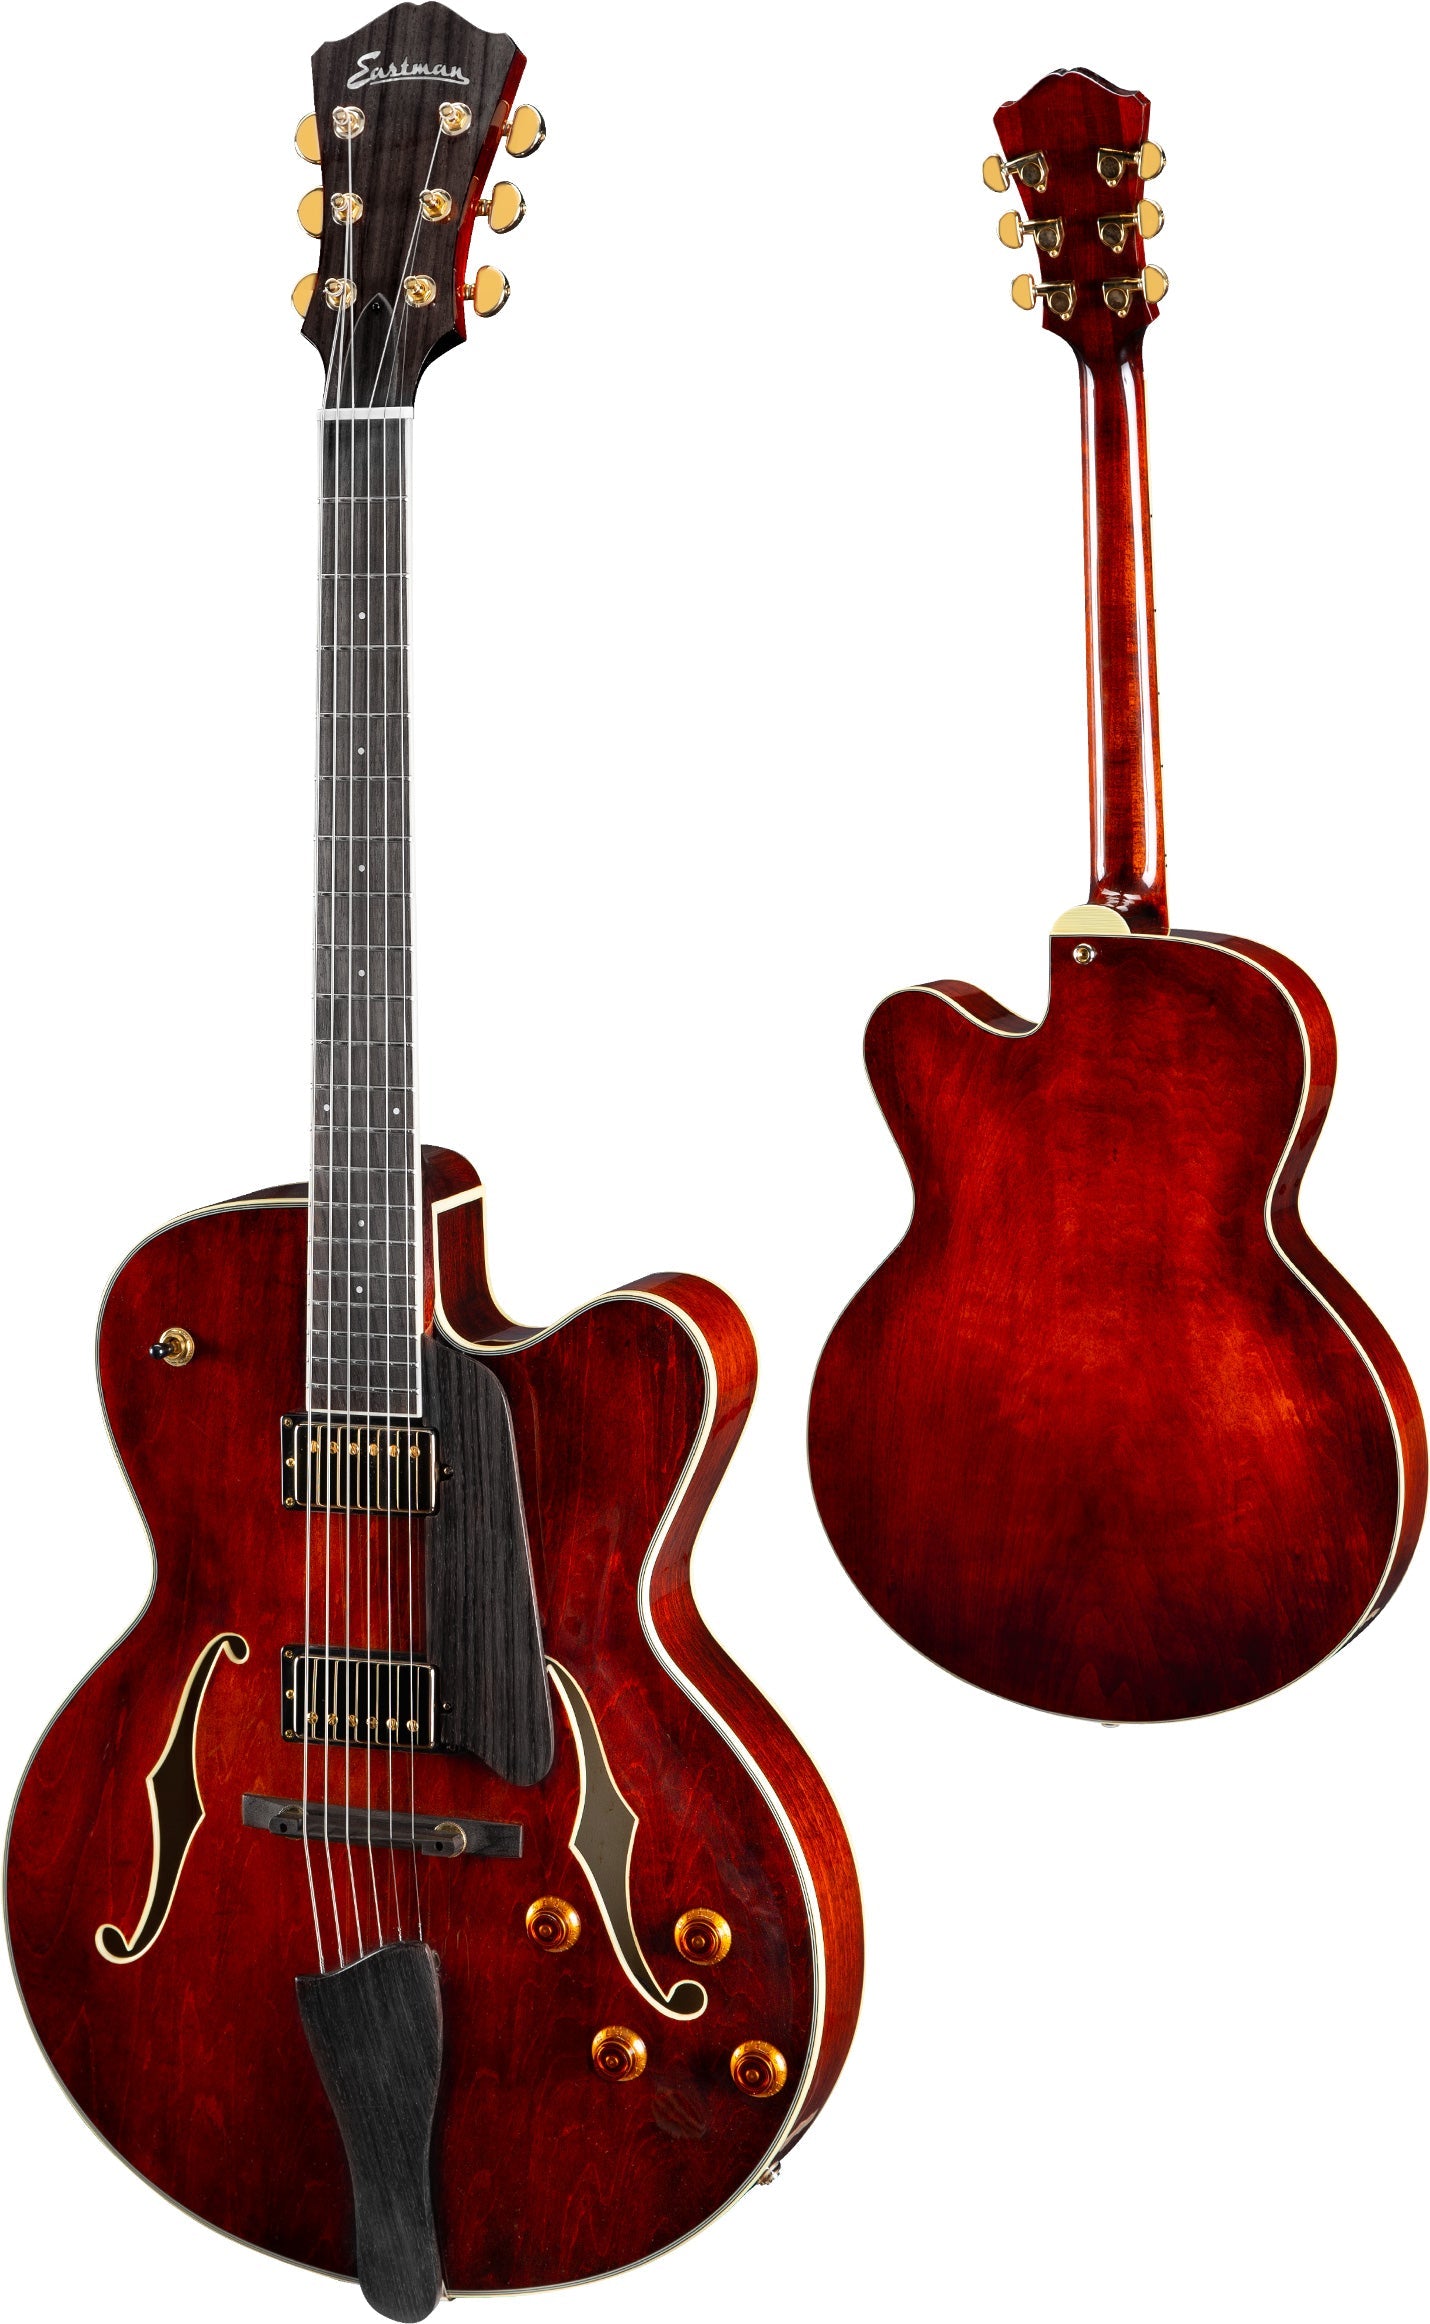 Eastman archtop guitars - Eastman Archtop Guitars - Shop the 